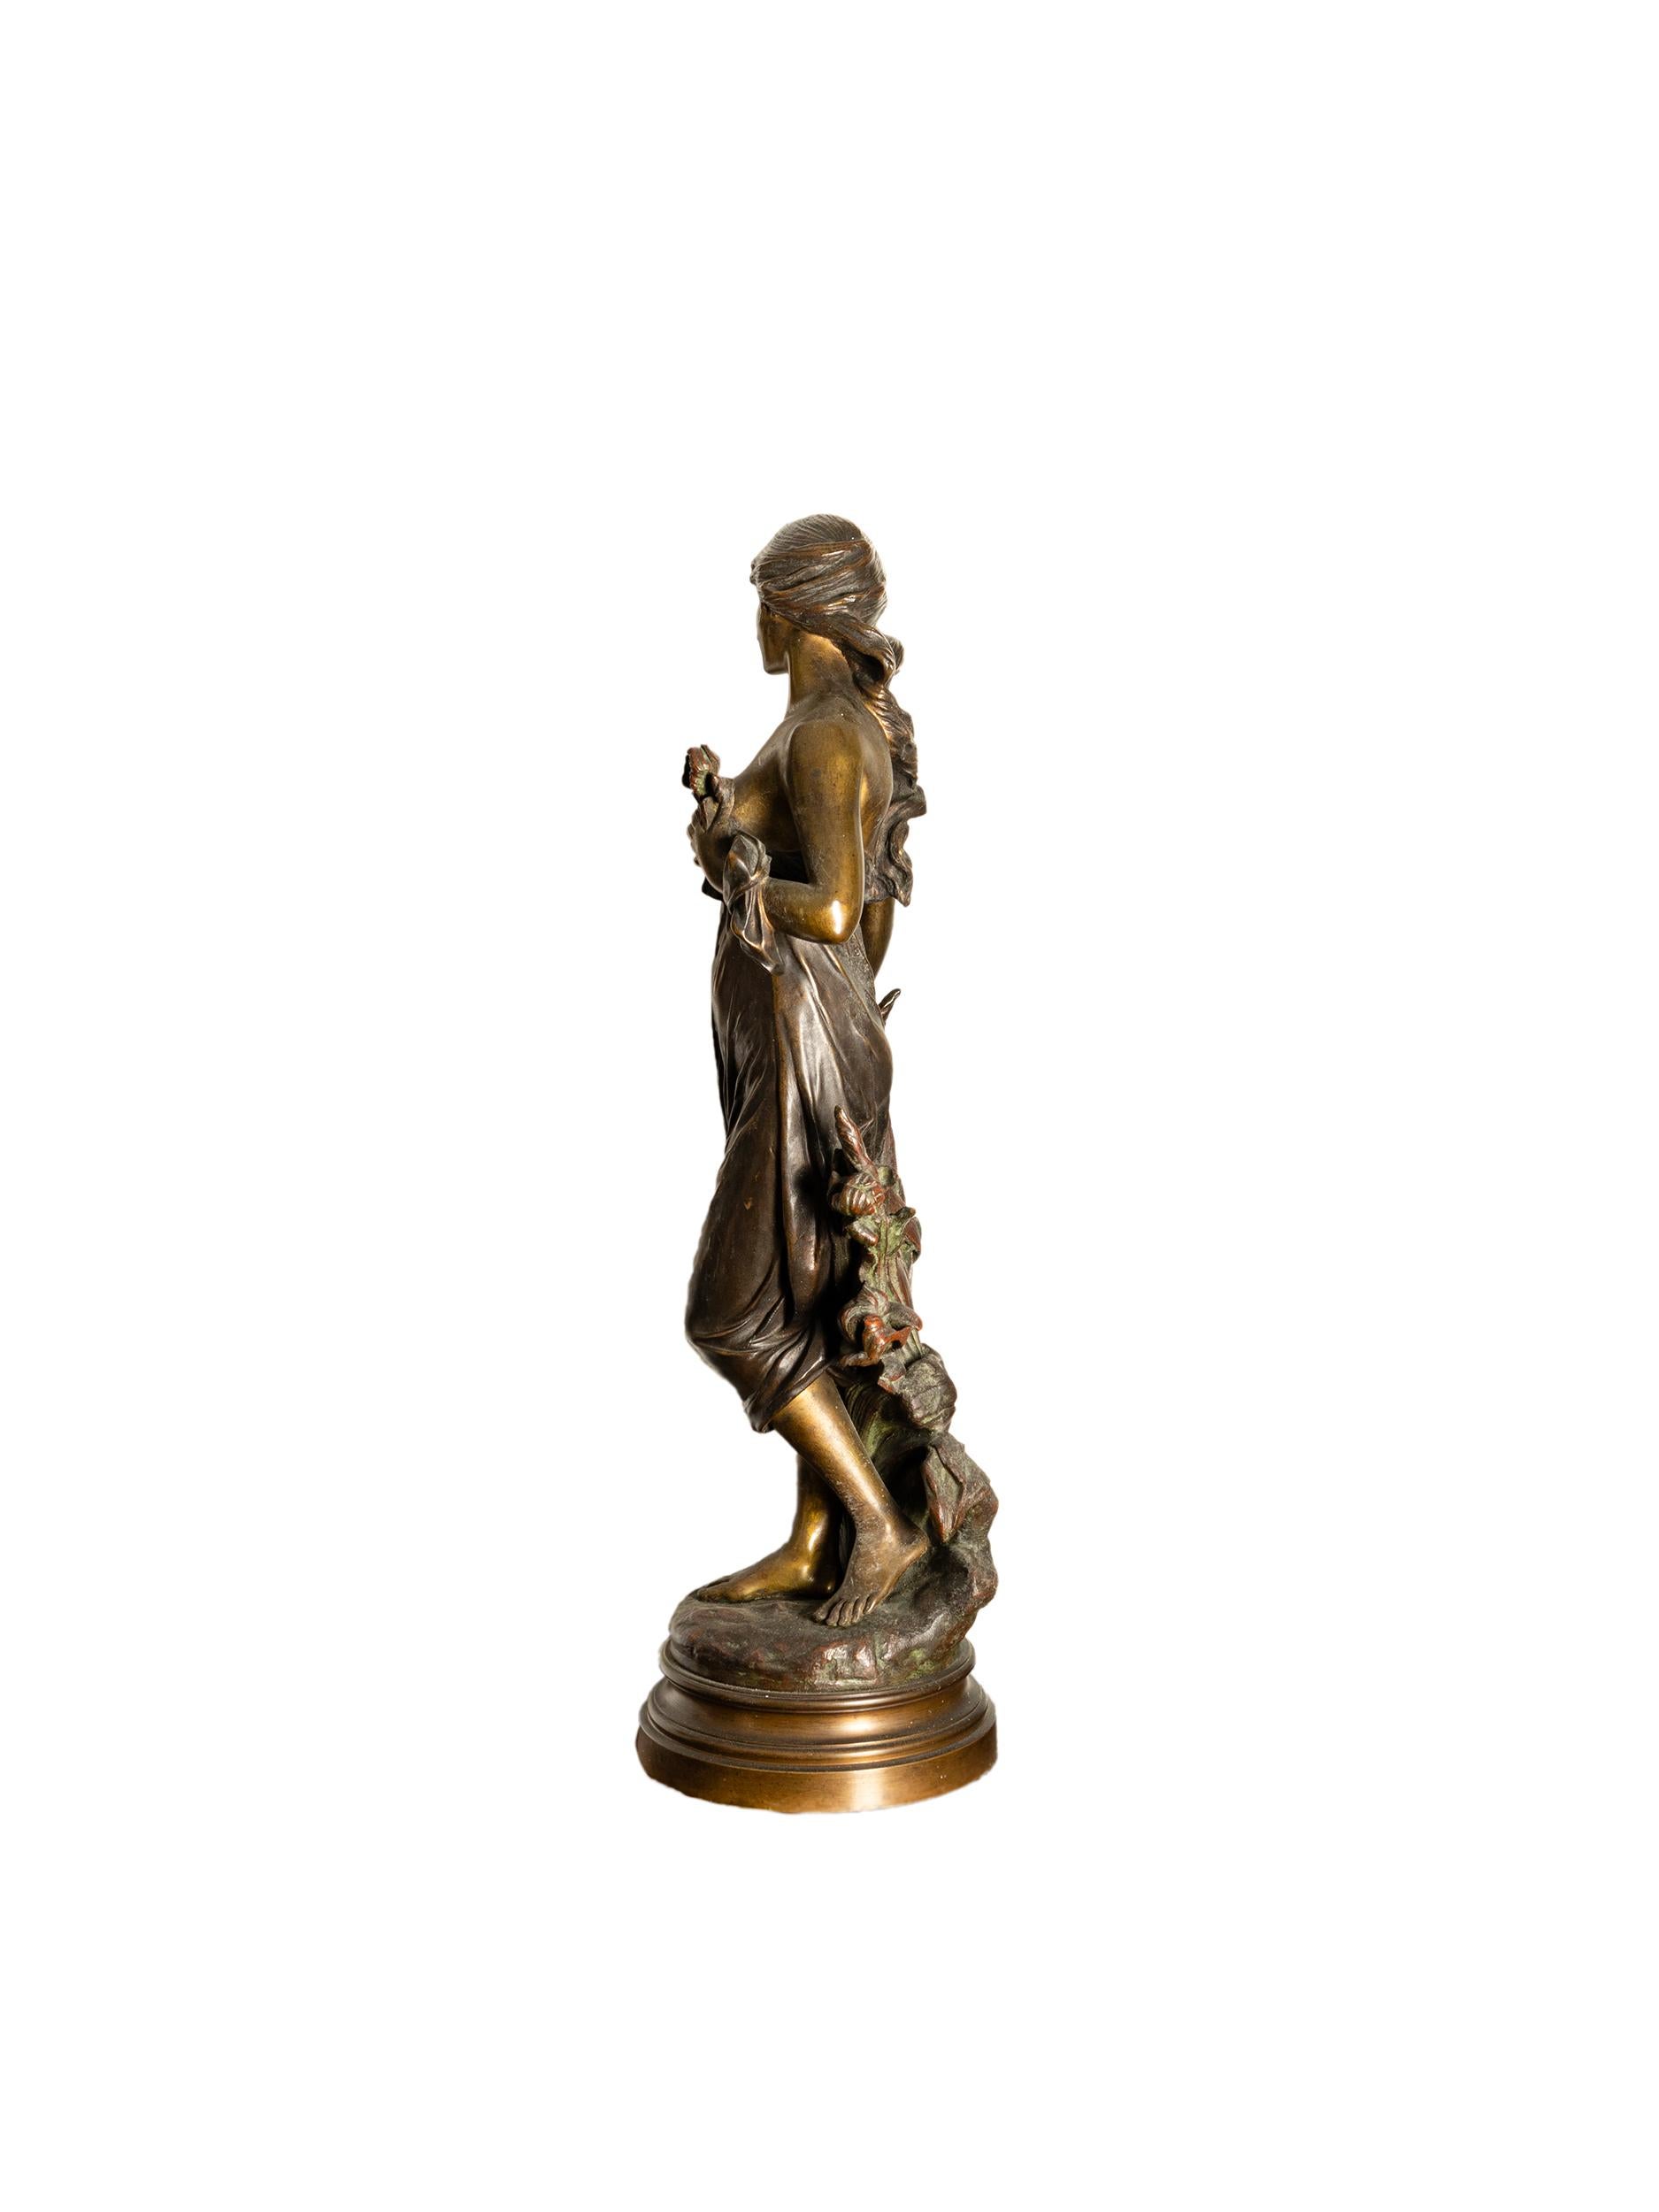 Figurine en bronze patiné de la déesse romaine de la chasse Diane par le grand artiste Edouard Drout.
